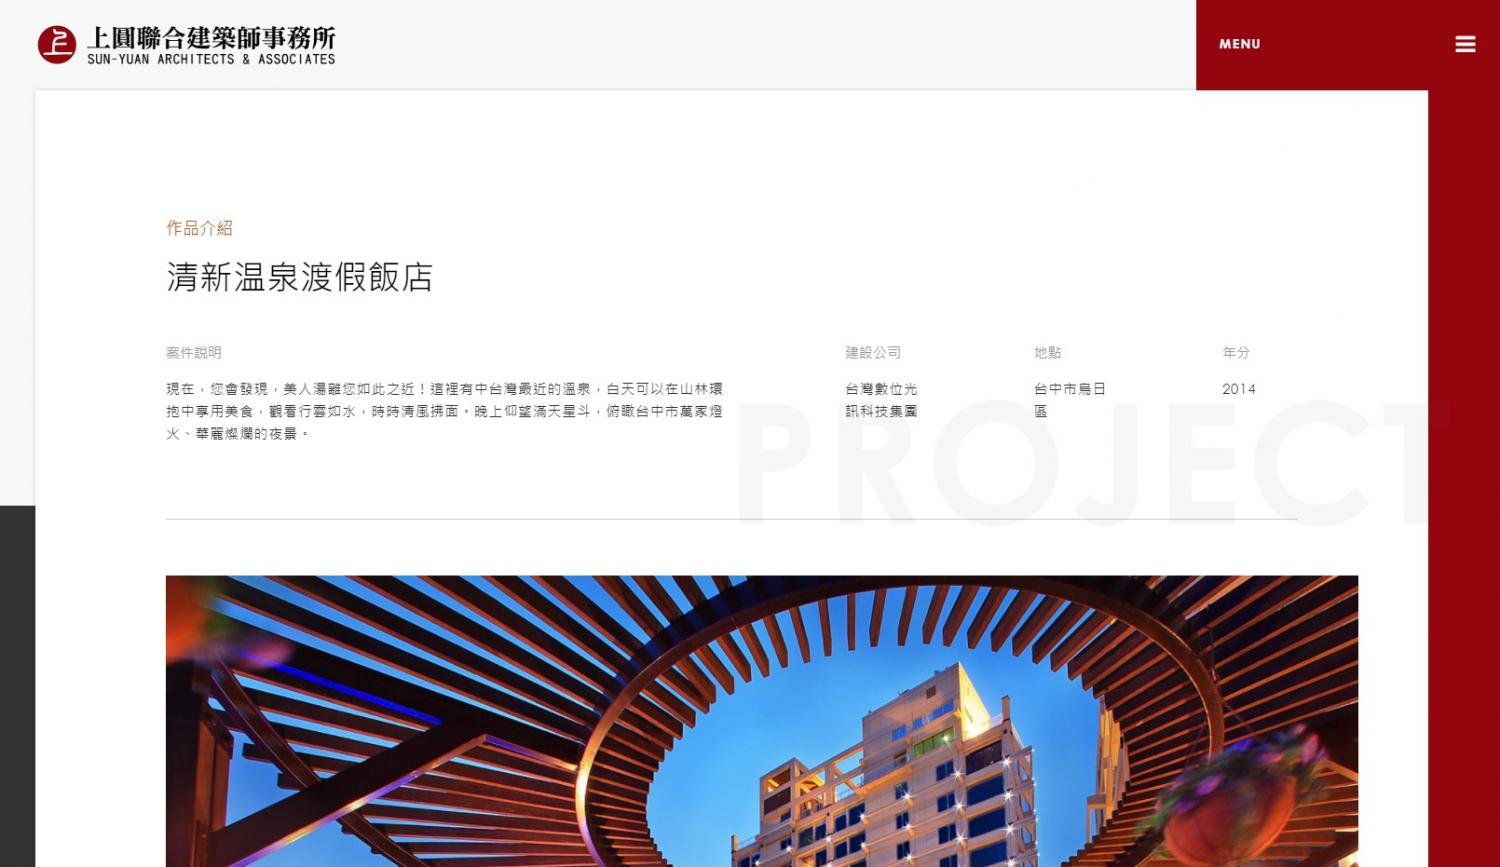 網站規劃:上圓聯合建築師事務所